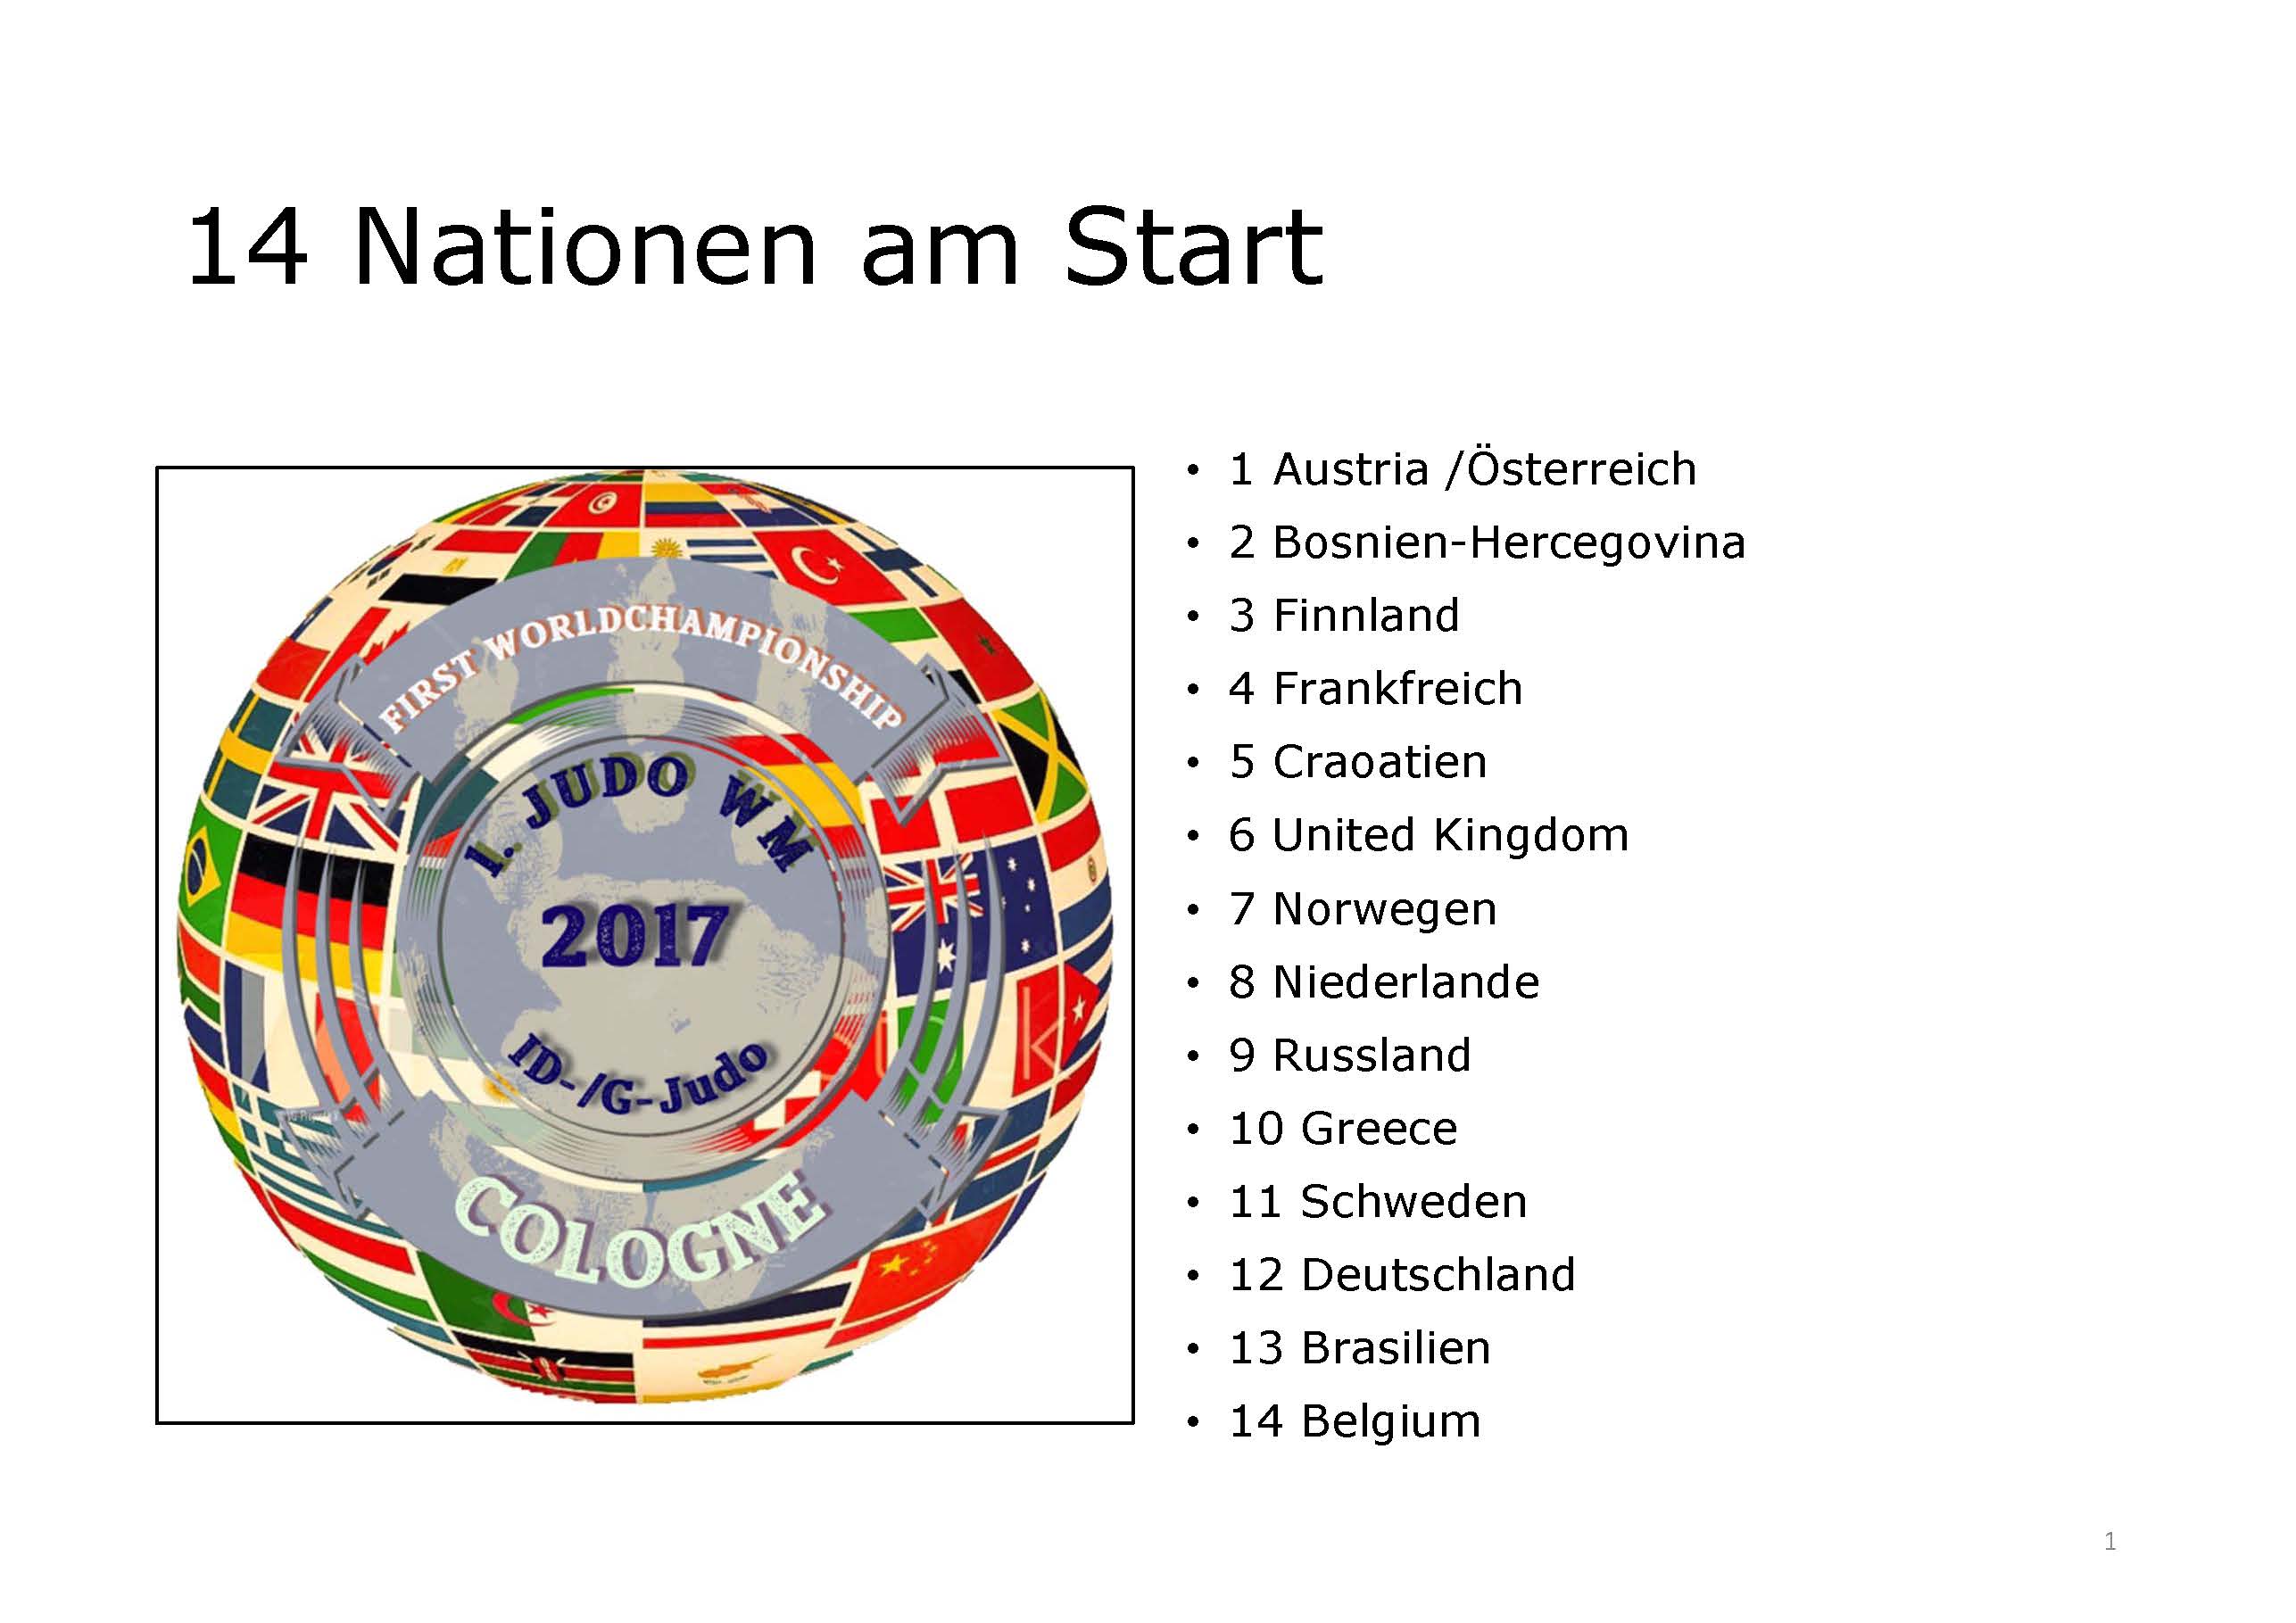 Nationen am Start - 14